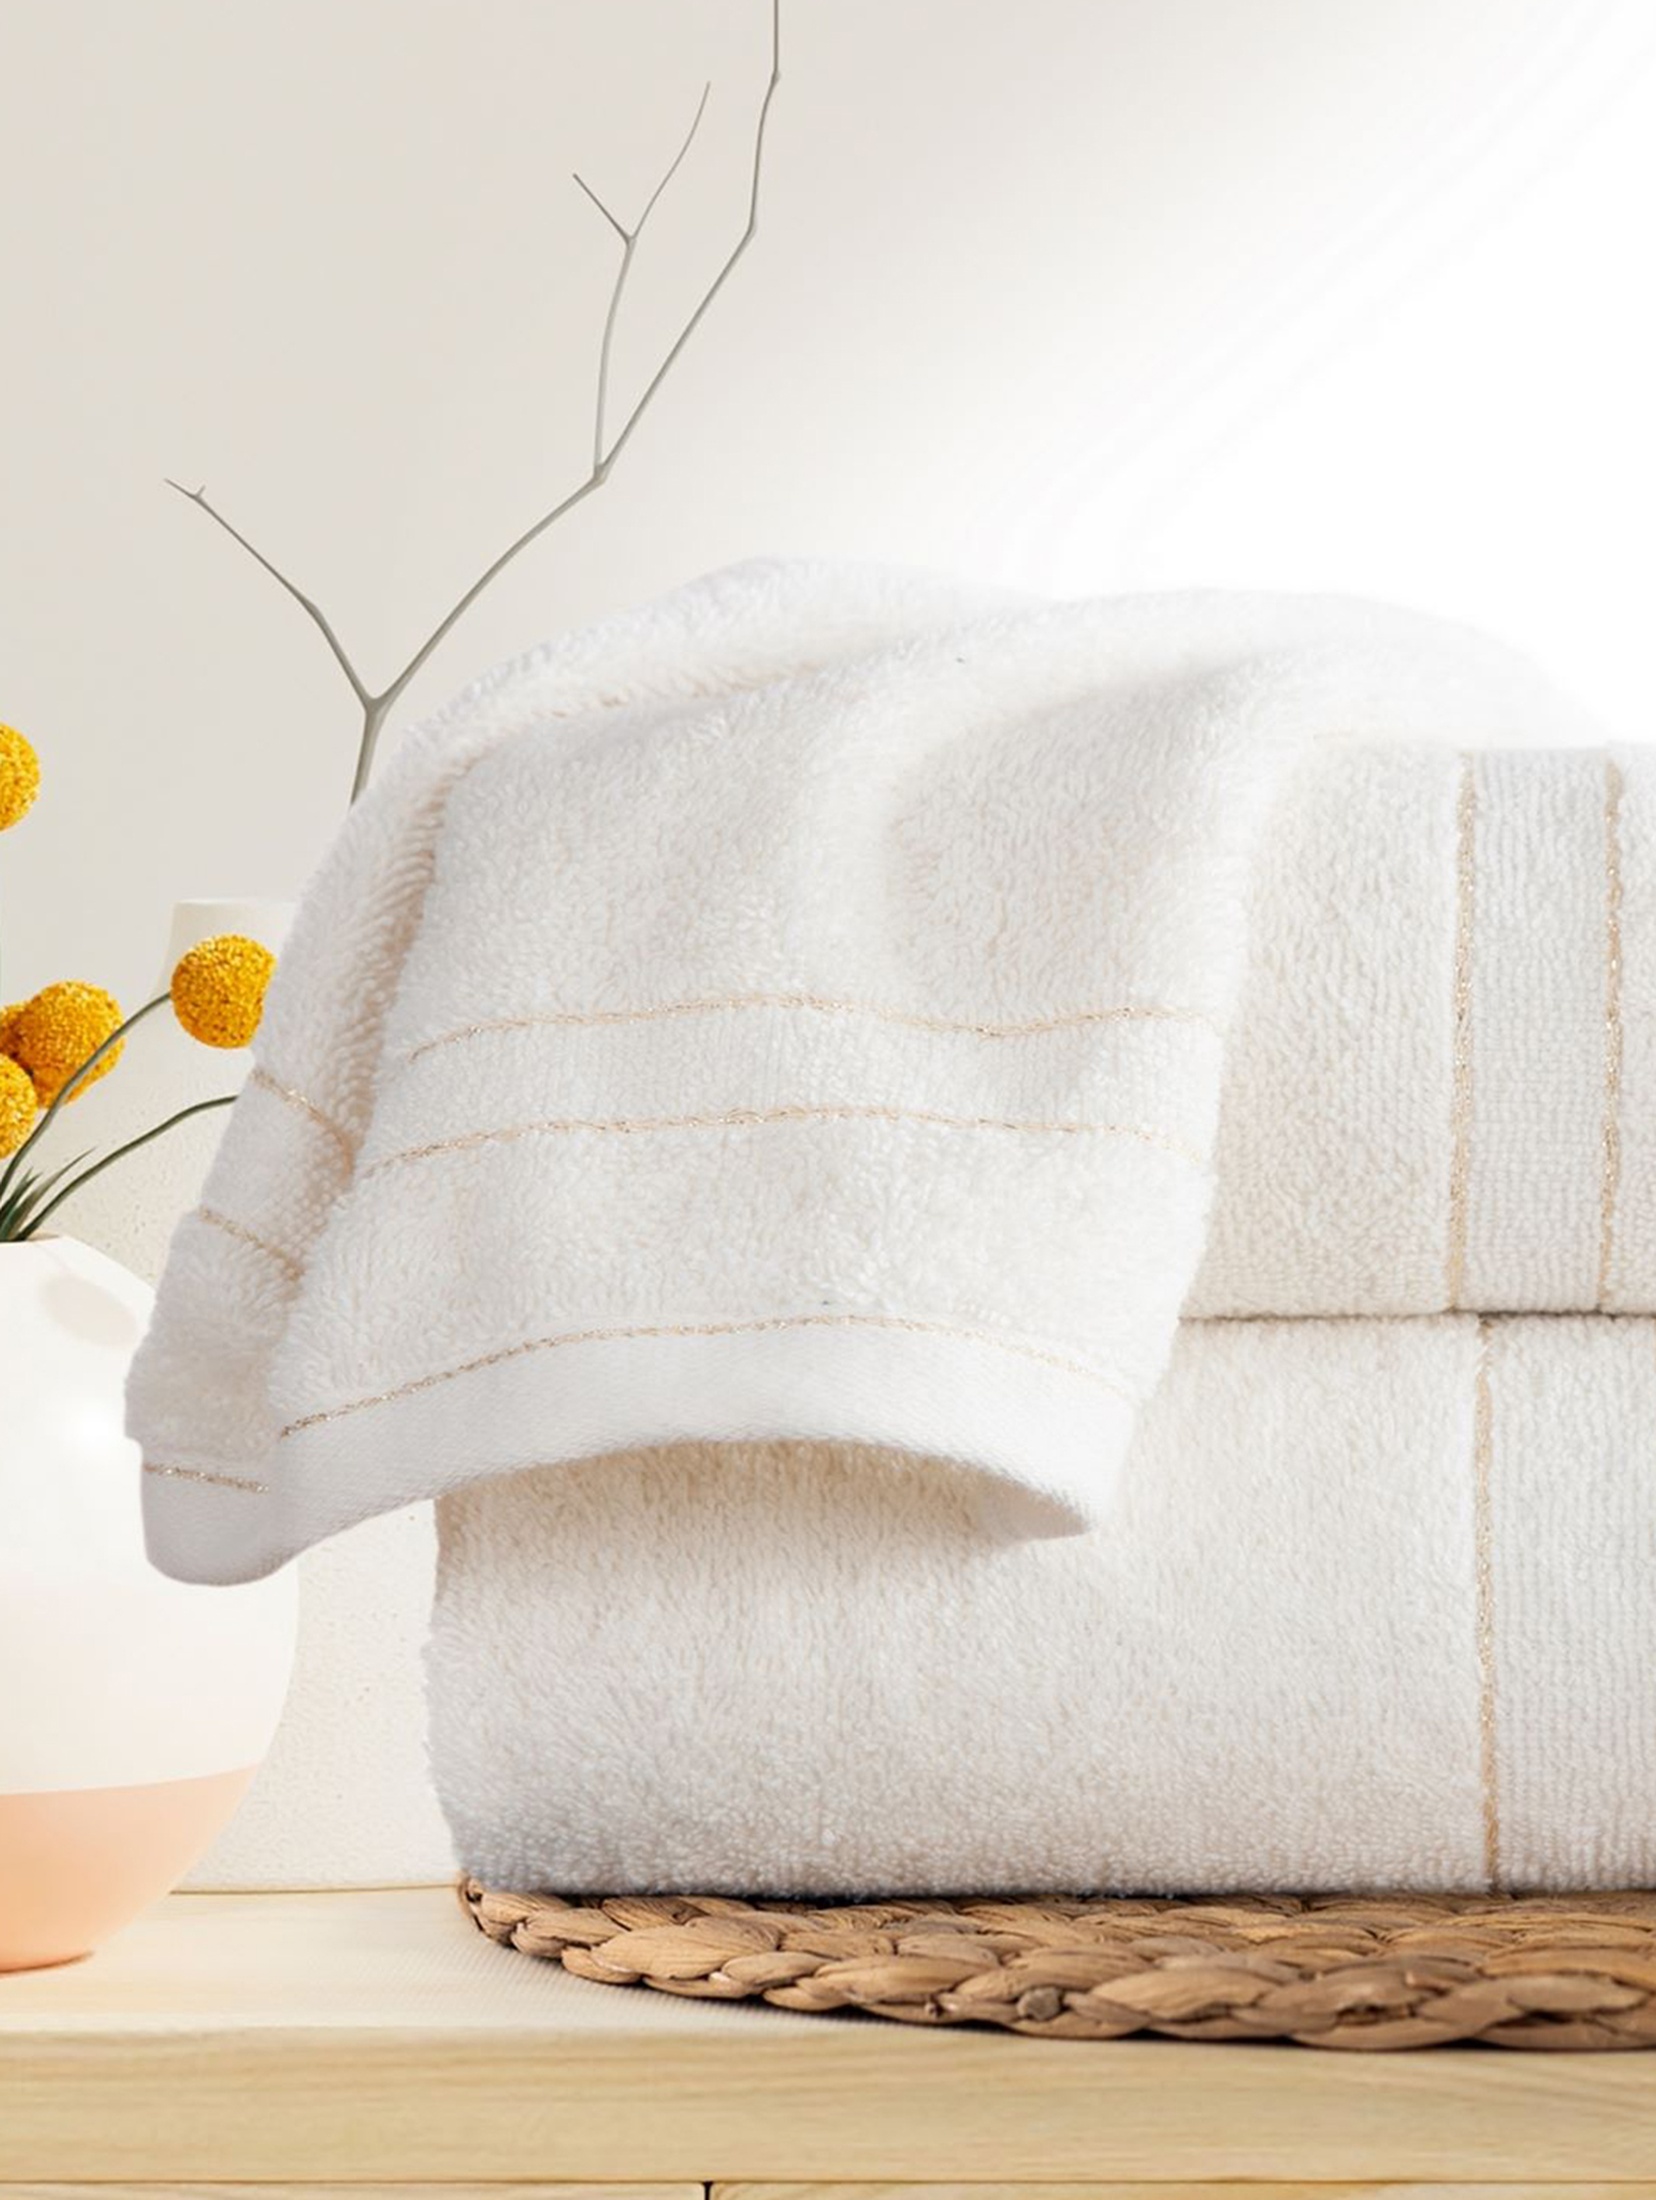 Ręcznik kąpielowy bawełniany Gala 70x140 cm jasnobrązowy